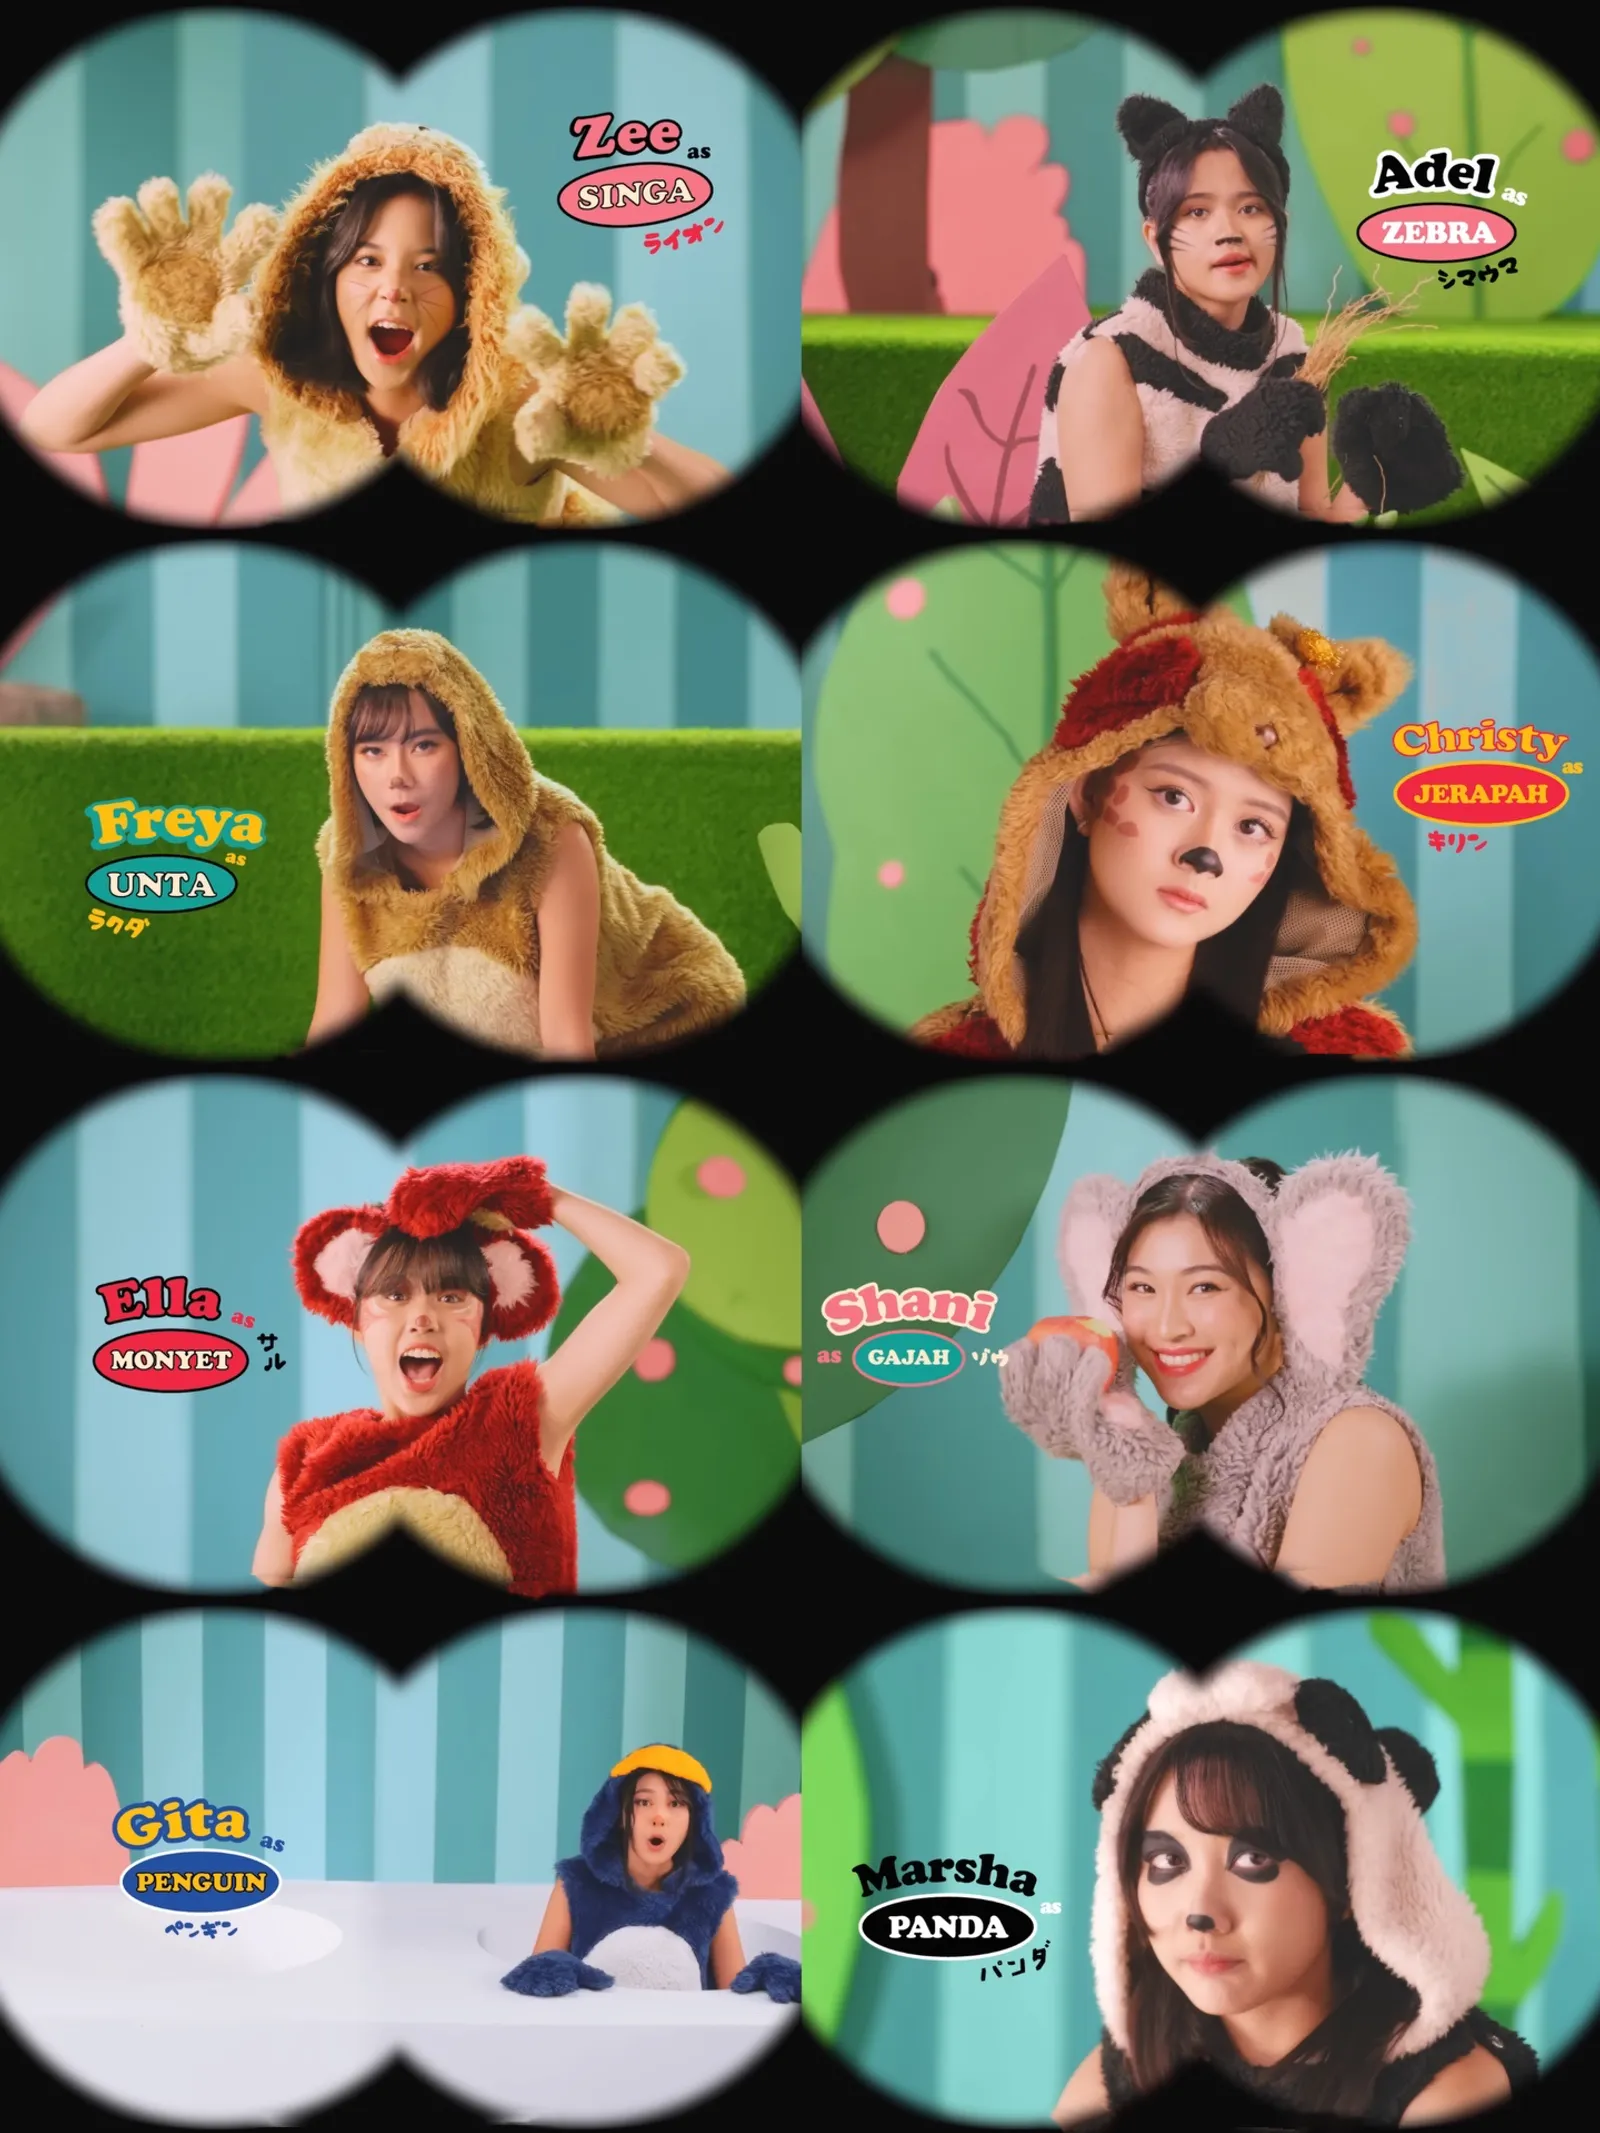 JKT48 Rilis Video Klip Lagu “Kebun Binatang Saat Hujan” Versi Terbaru